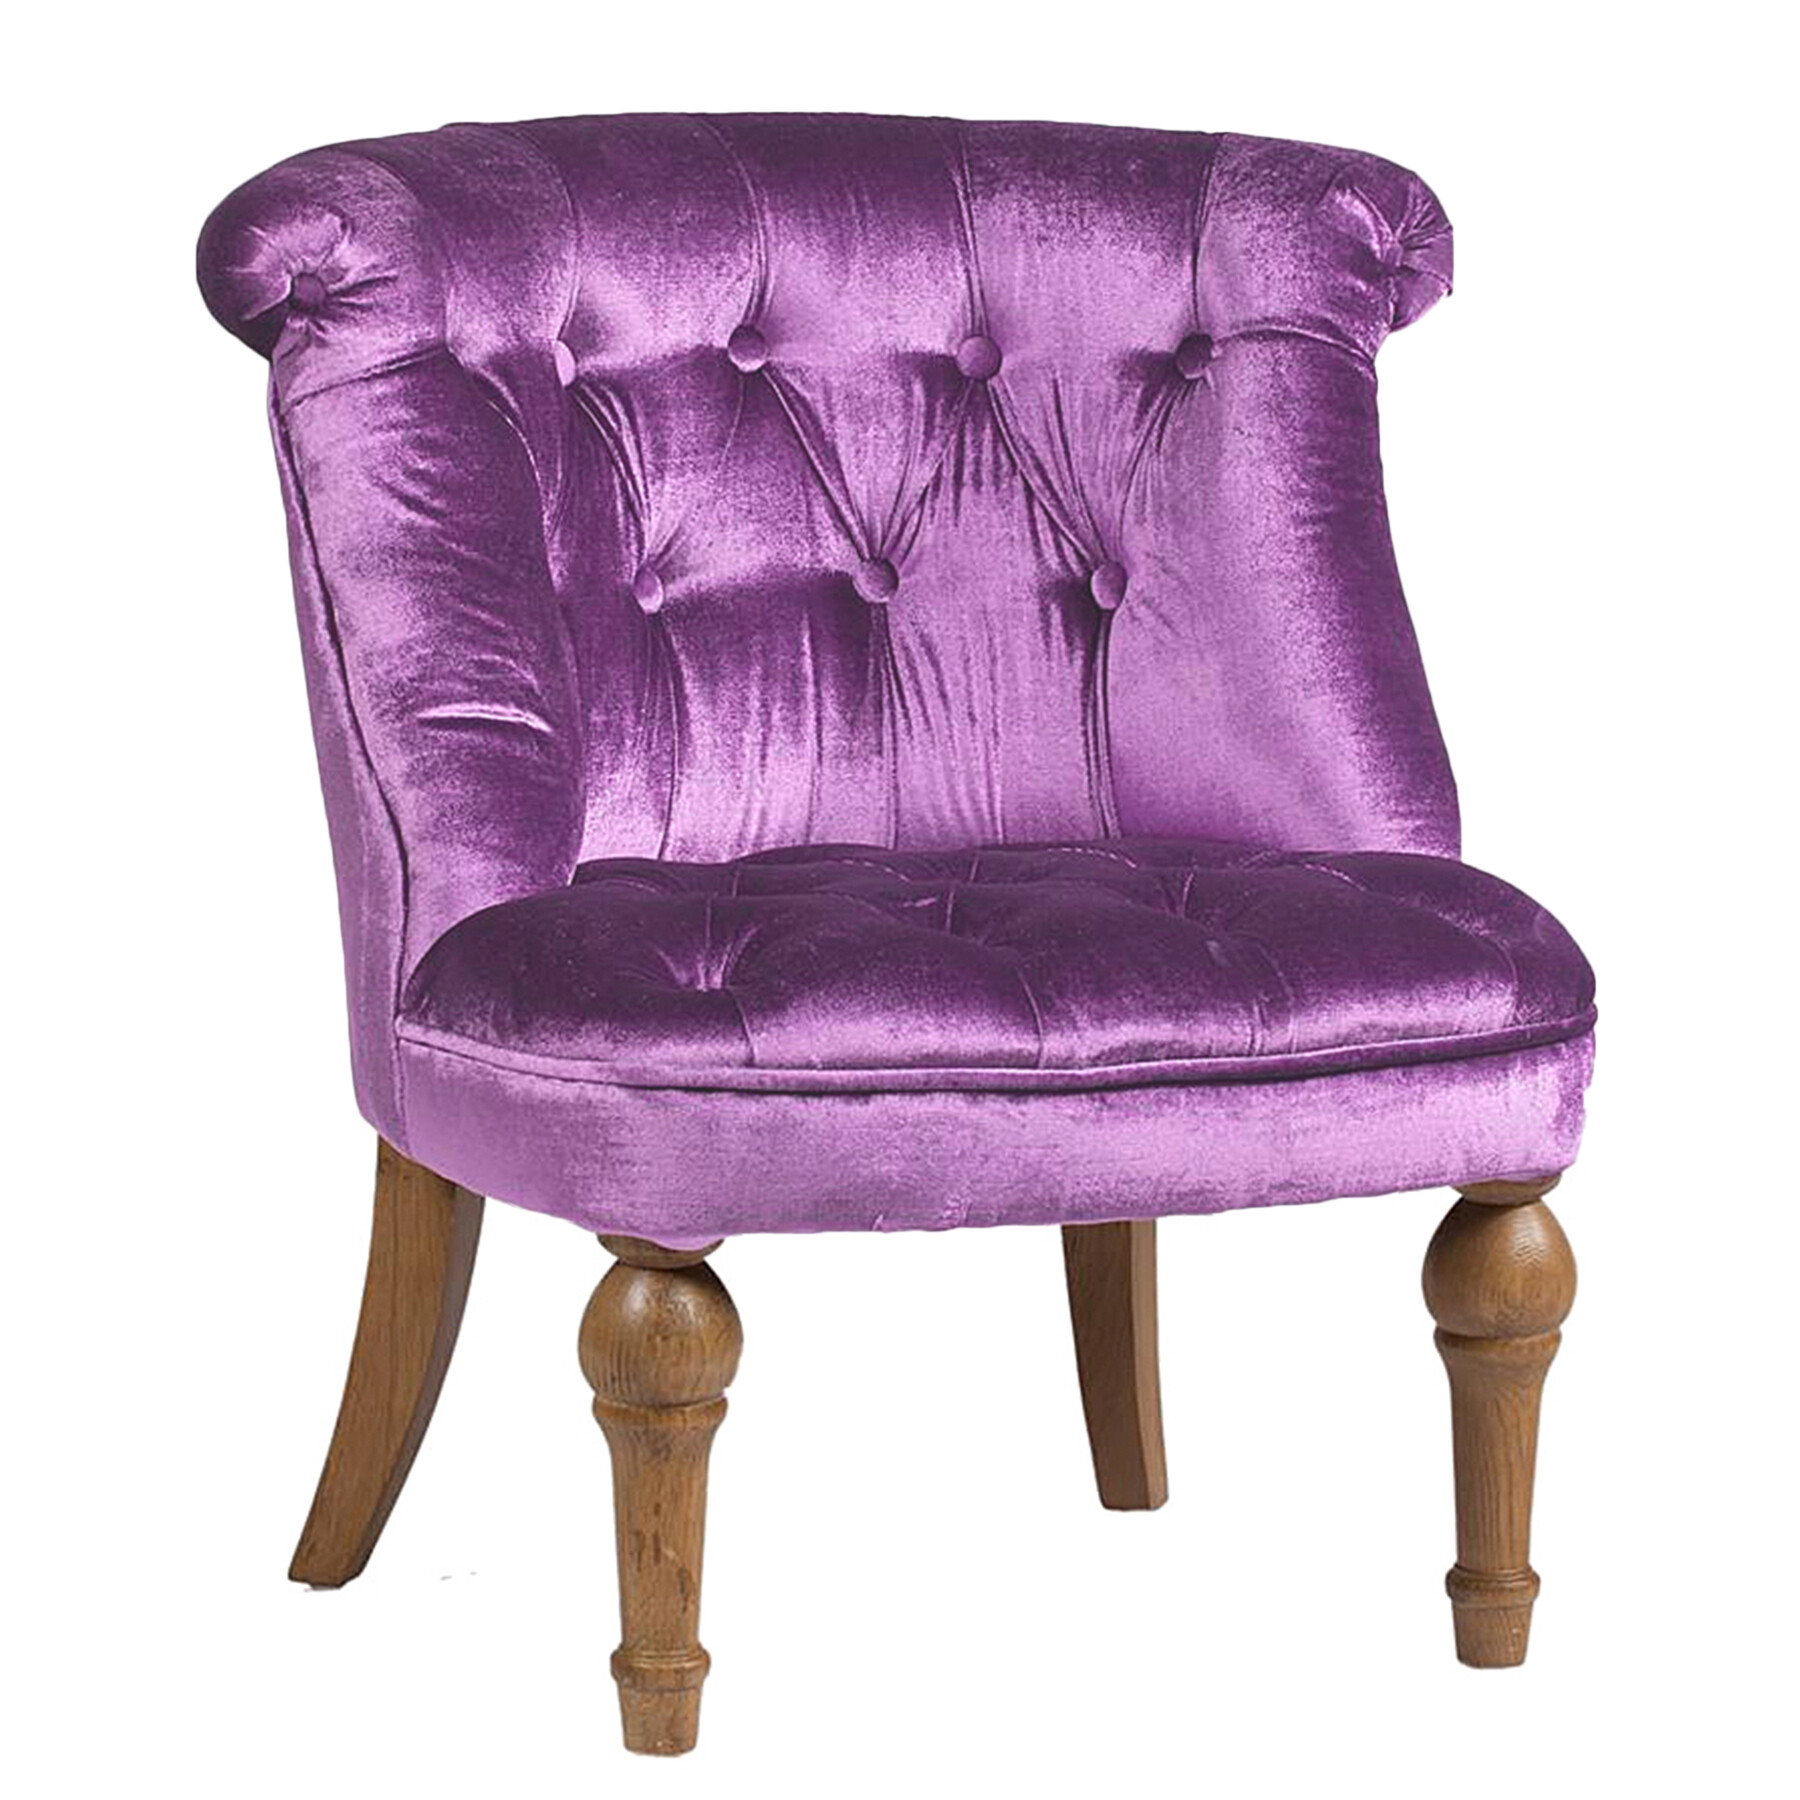 Кресло мягкое с фигурными ножками вельвет лиловое Sophie Tufted Slipper Chair